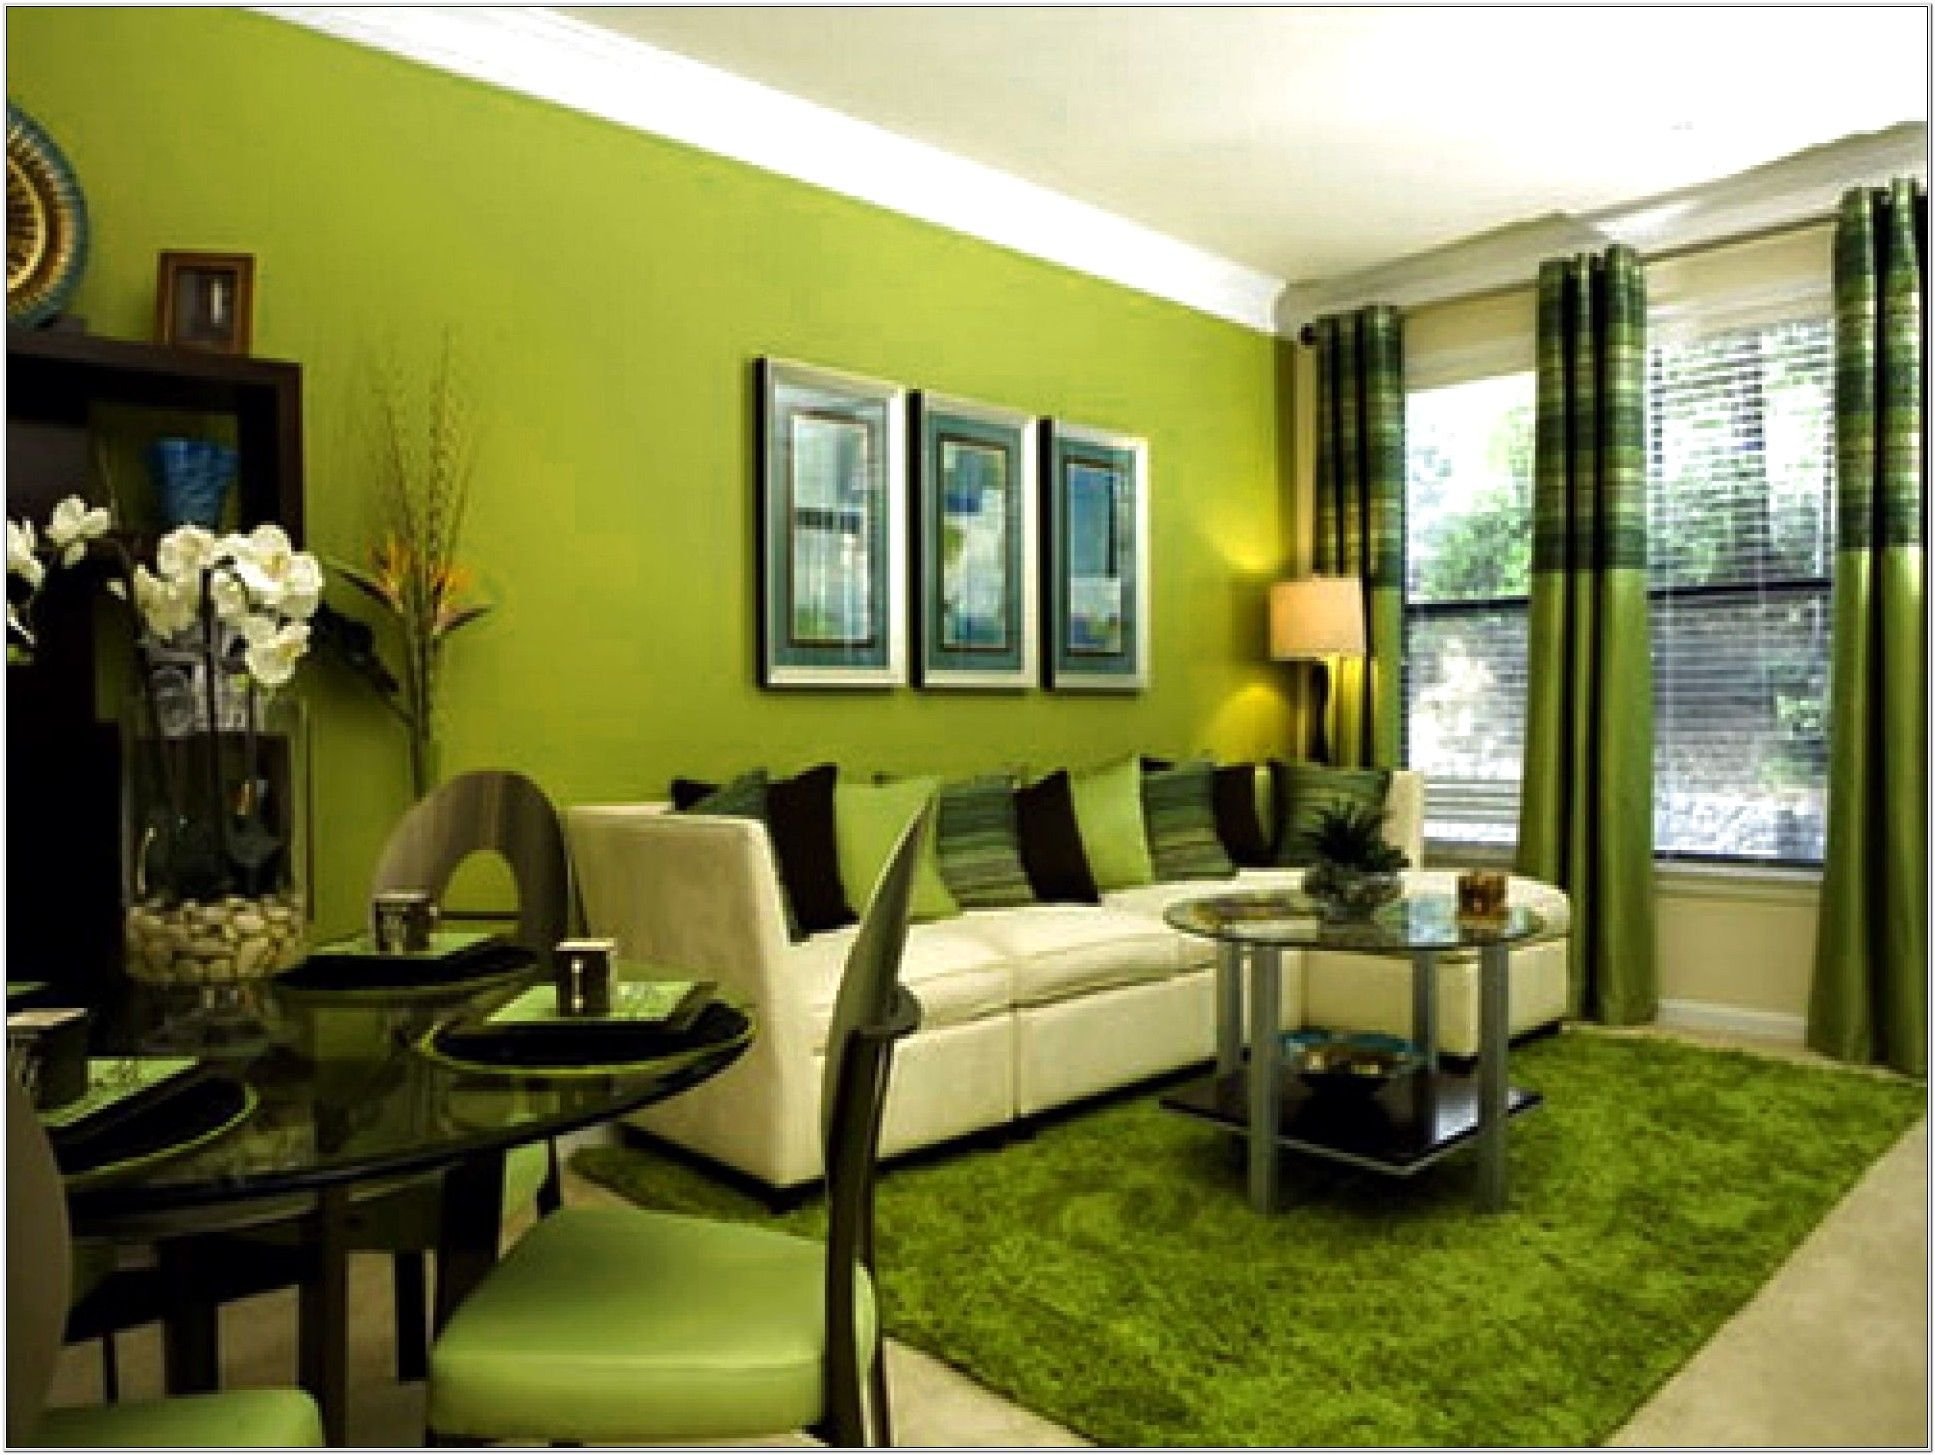 Цвета стен в интерьере гостиной. Цветовые решения в интерьере. Зеленый цвет в интерьере. Фисташковые стены в интерьере. Интерьер в зеленых тонах.